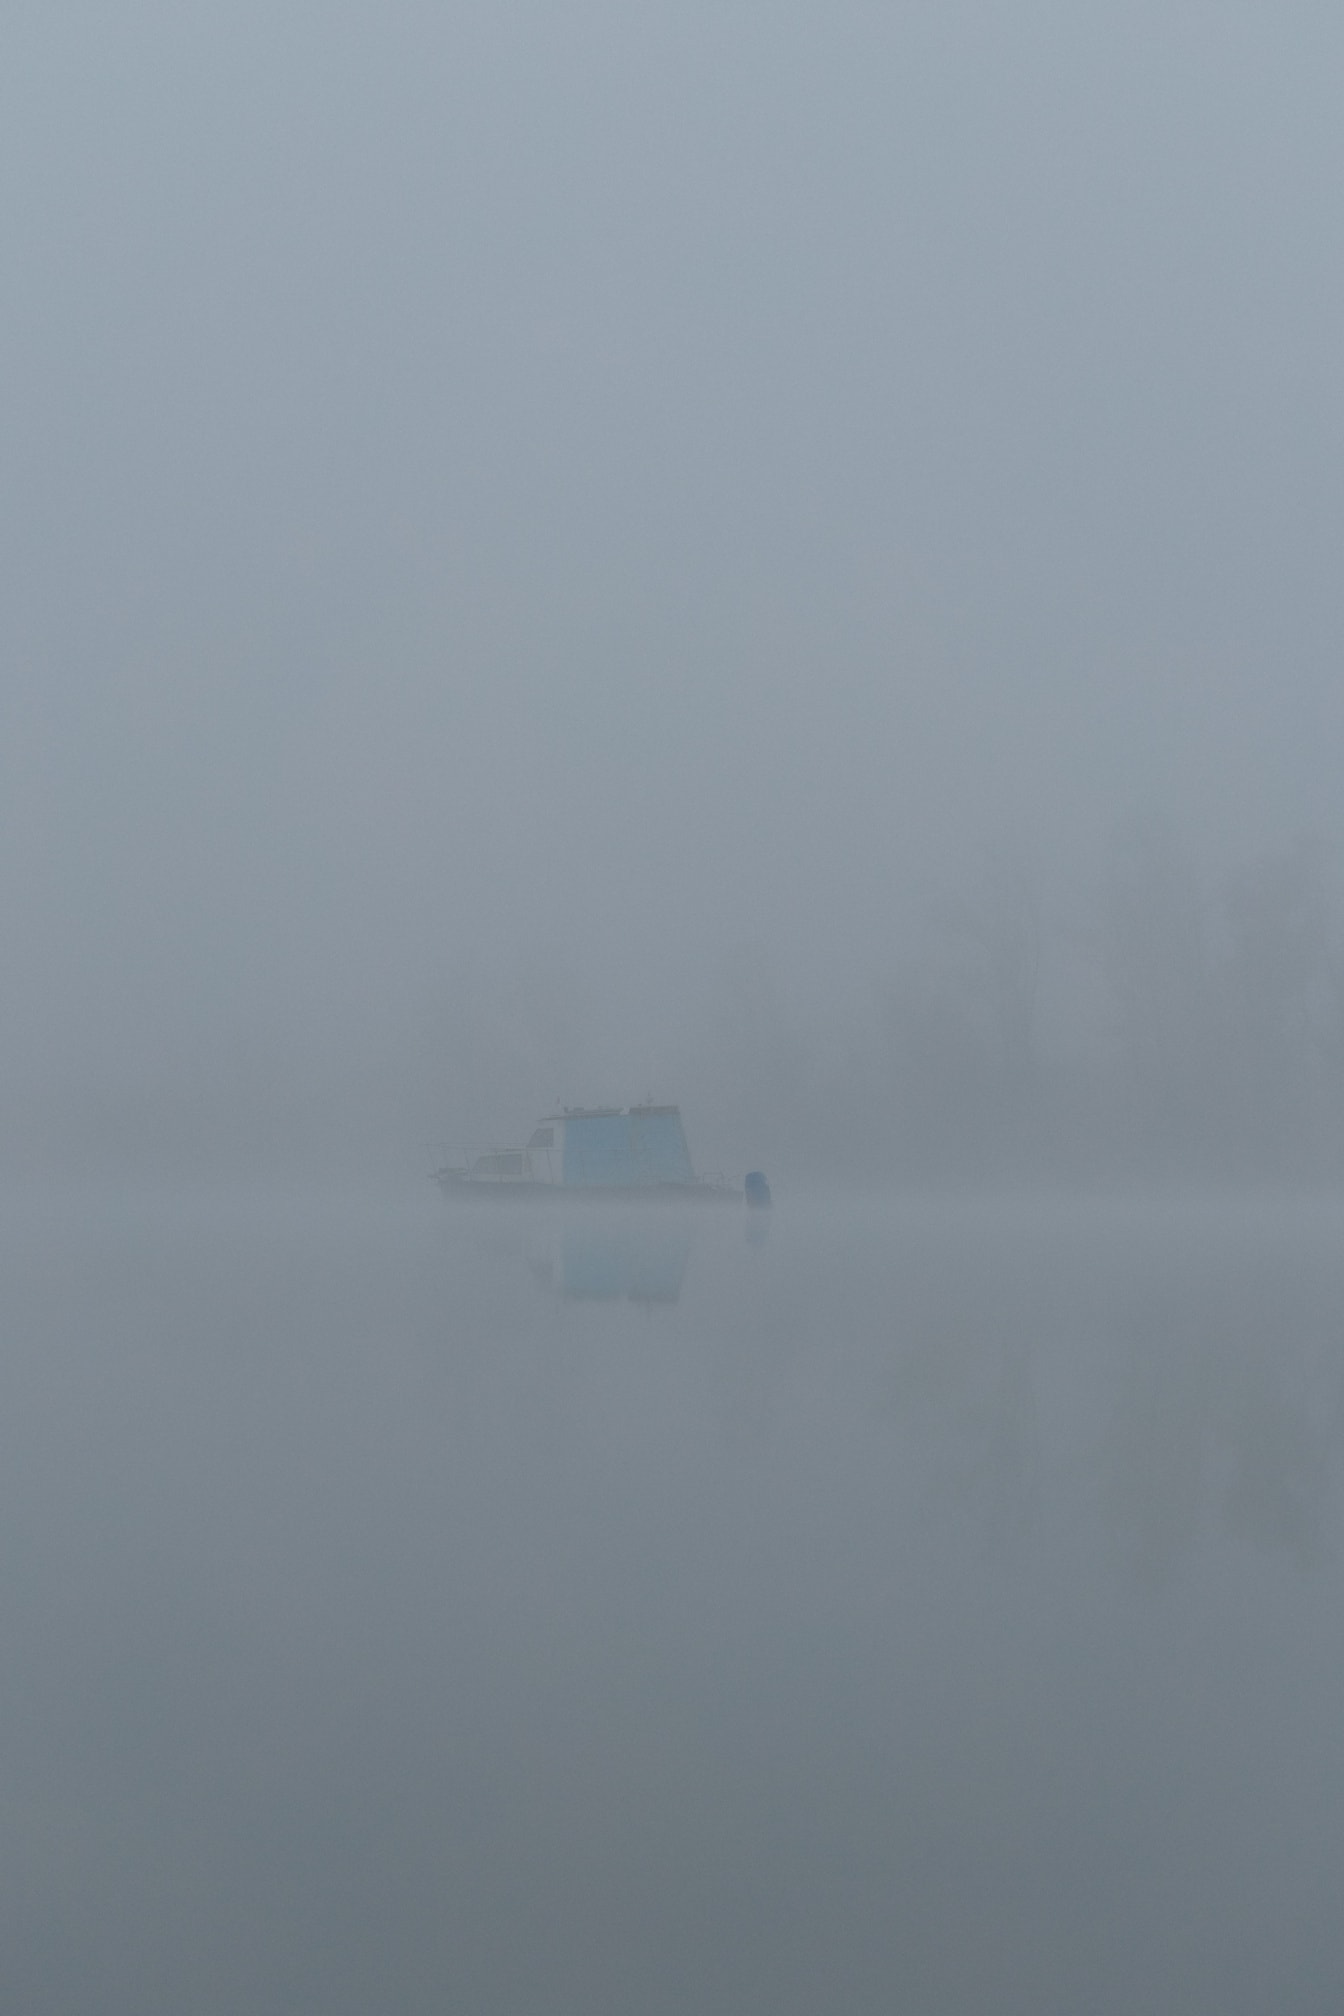 Boot in de verte op het meer in de dichte mist